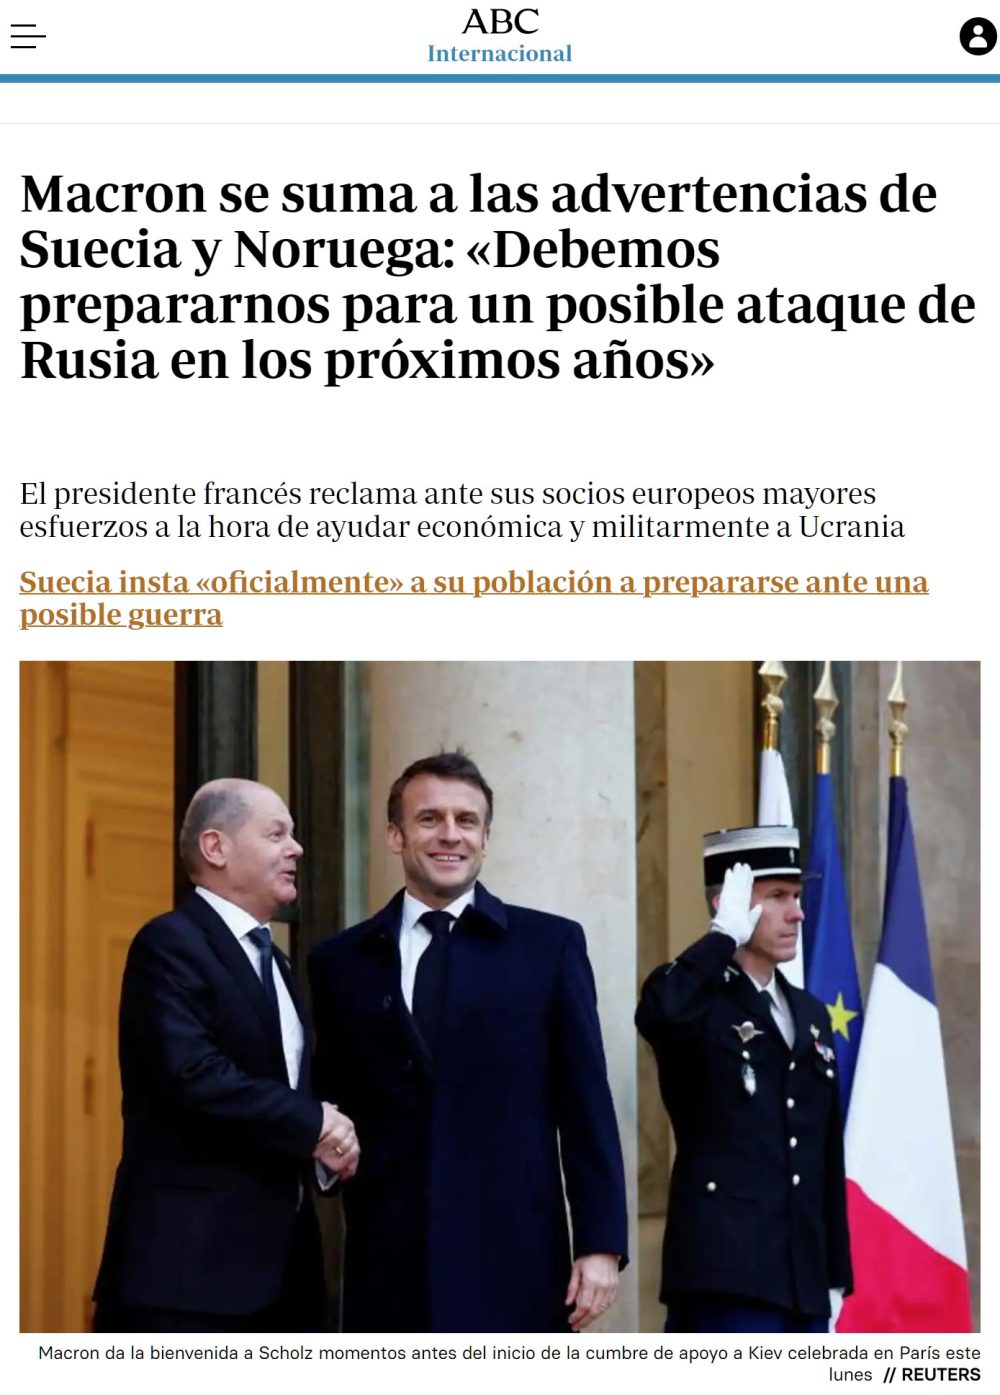 Macron advierte de un posible ataque de Rusia a Europa en los próximos años